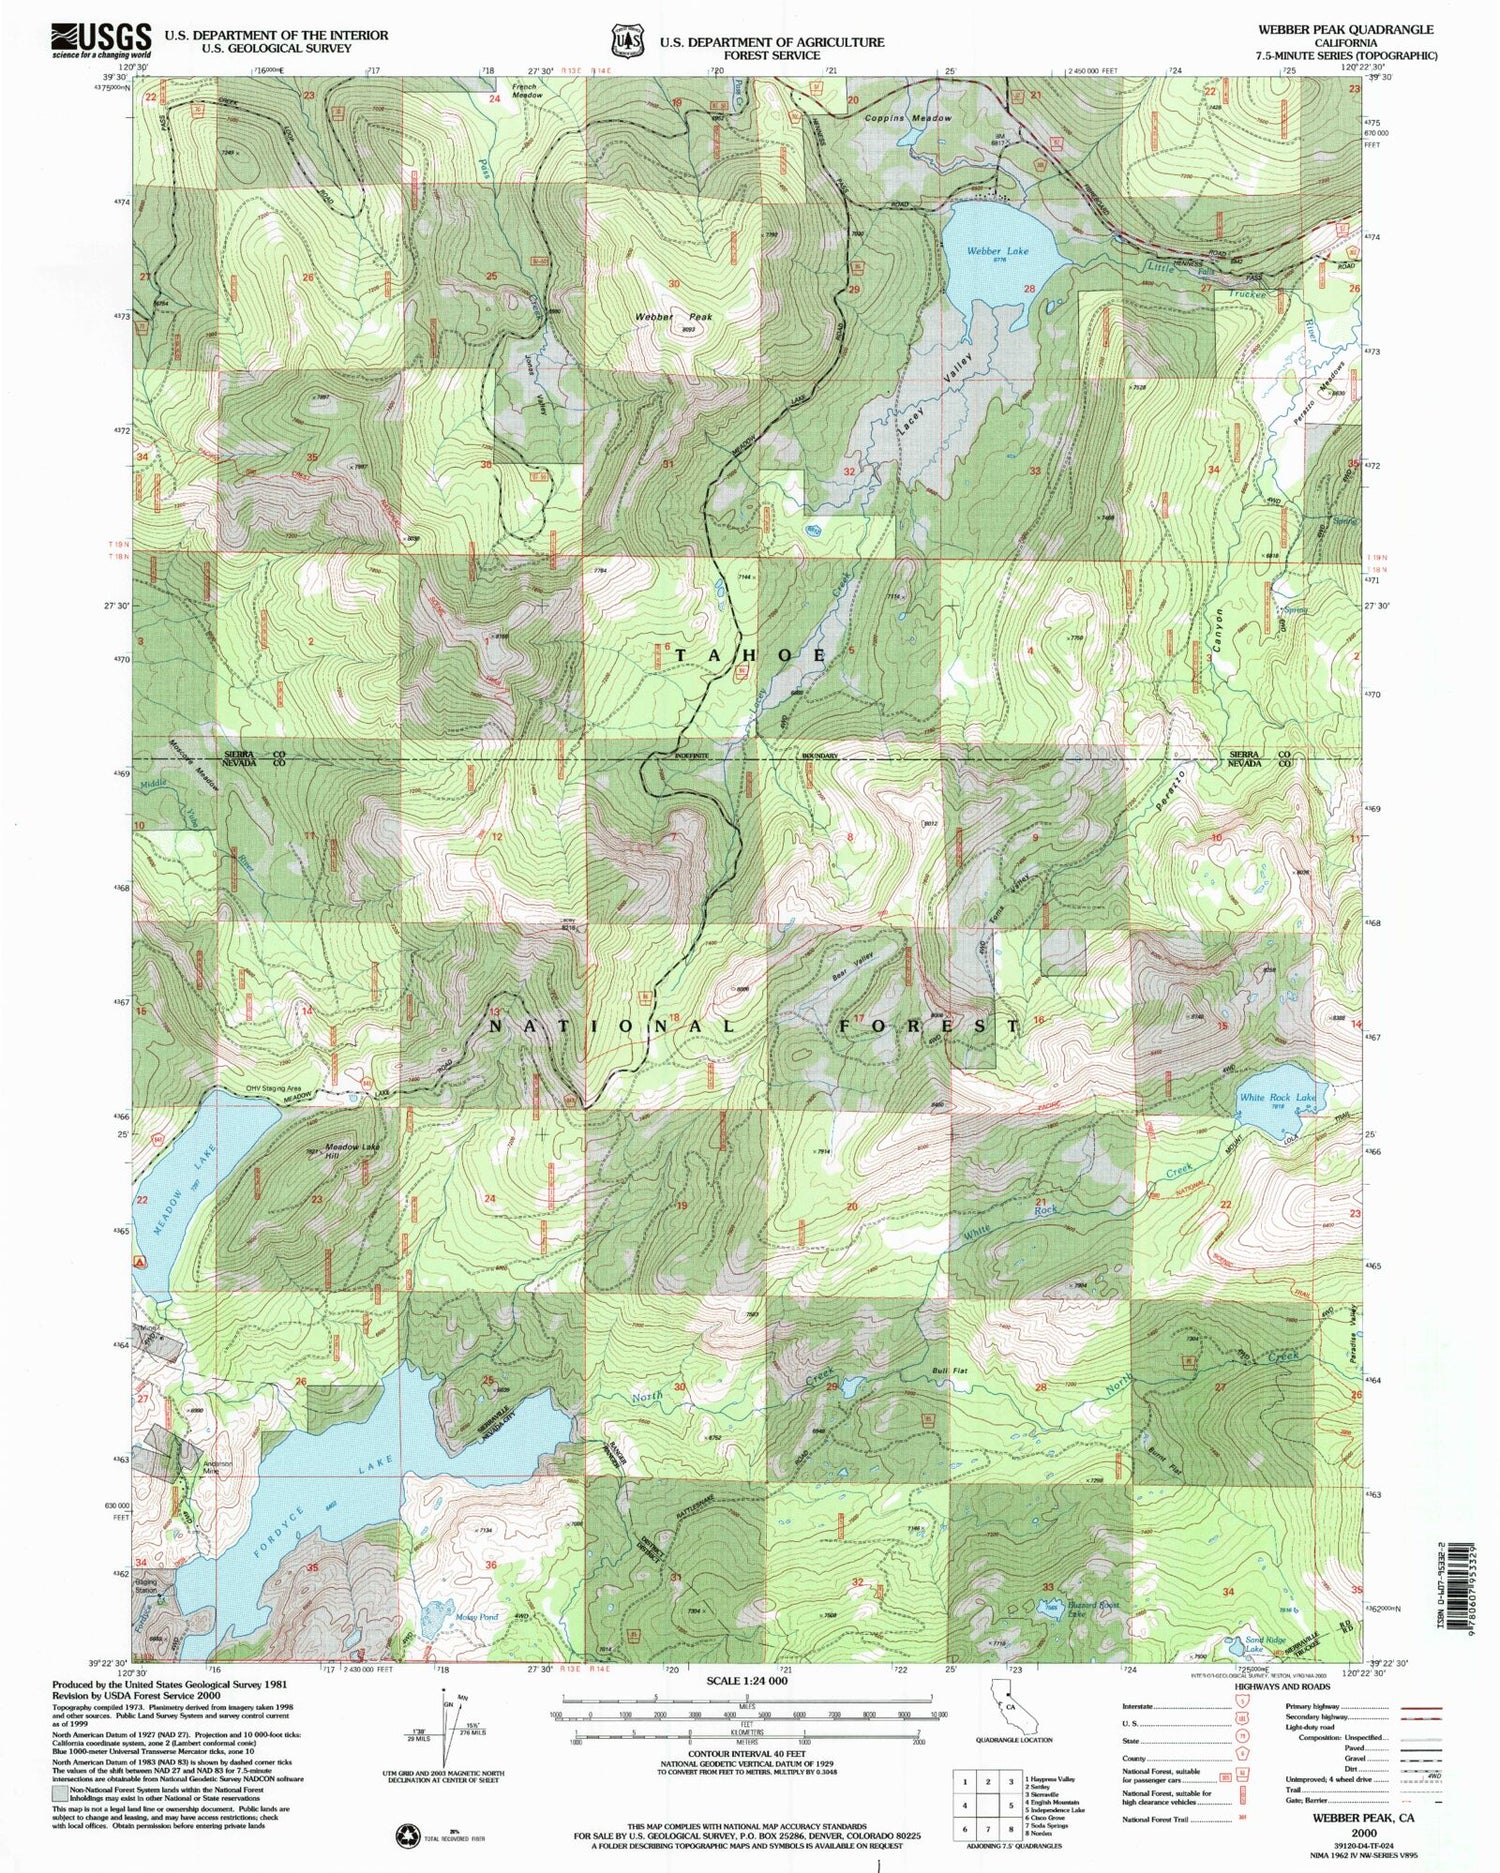 Classic USGS Webber Peak California 7.5'x7.5' Topo Map Image